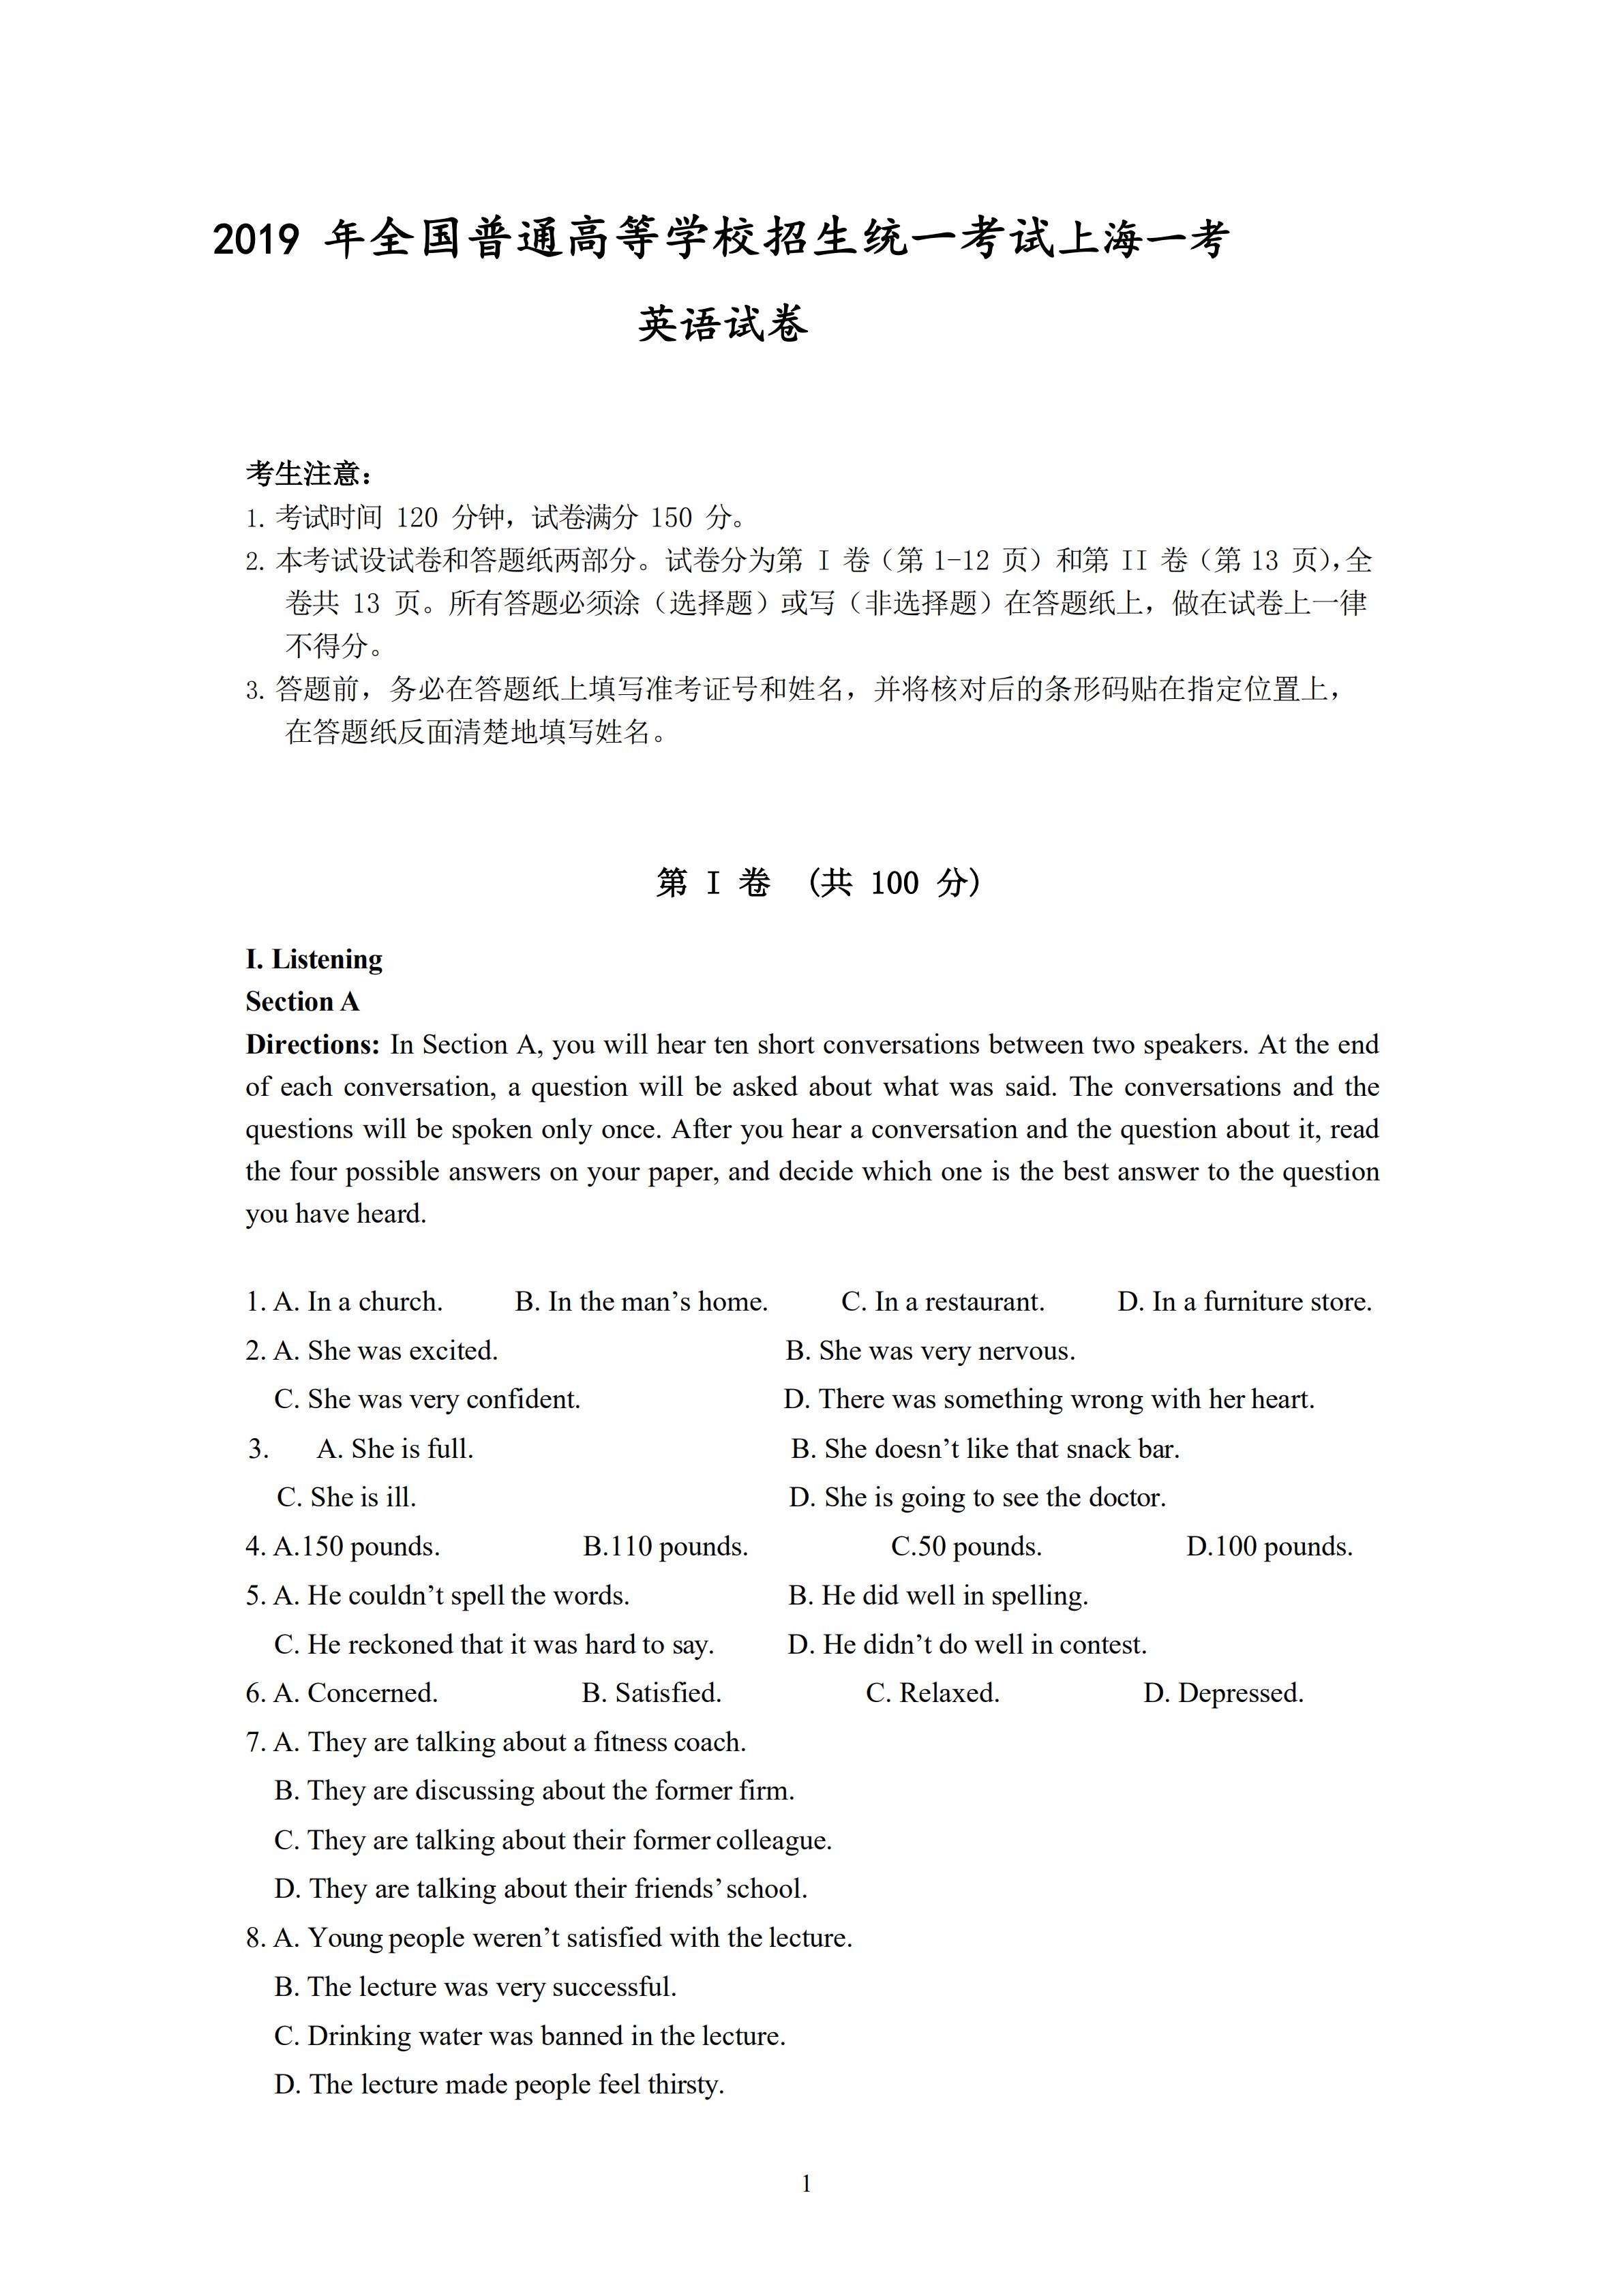 2019 年上海市春季高考英语试卷及答案部分截图